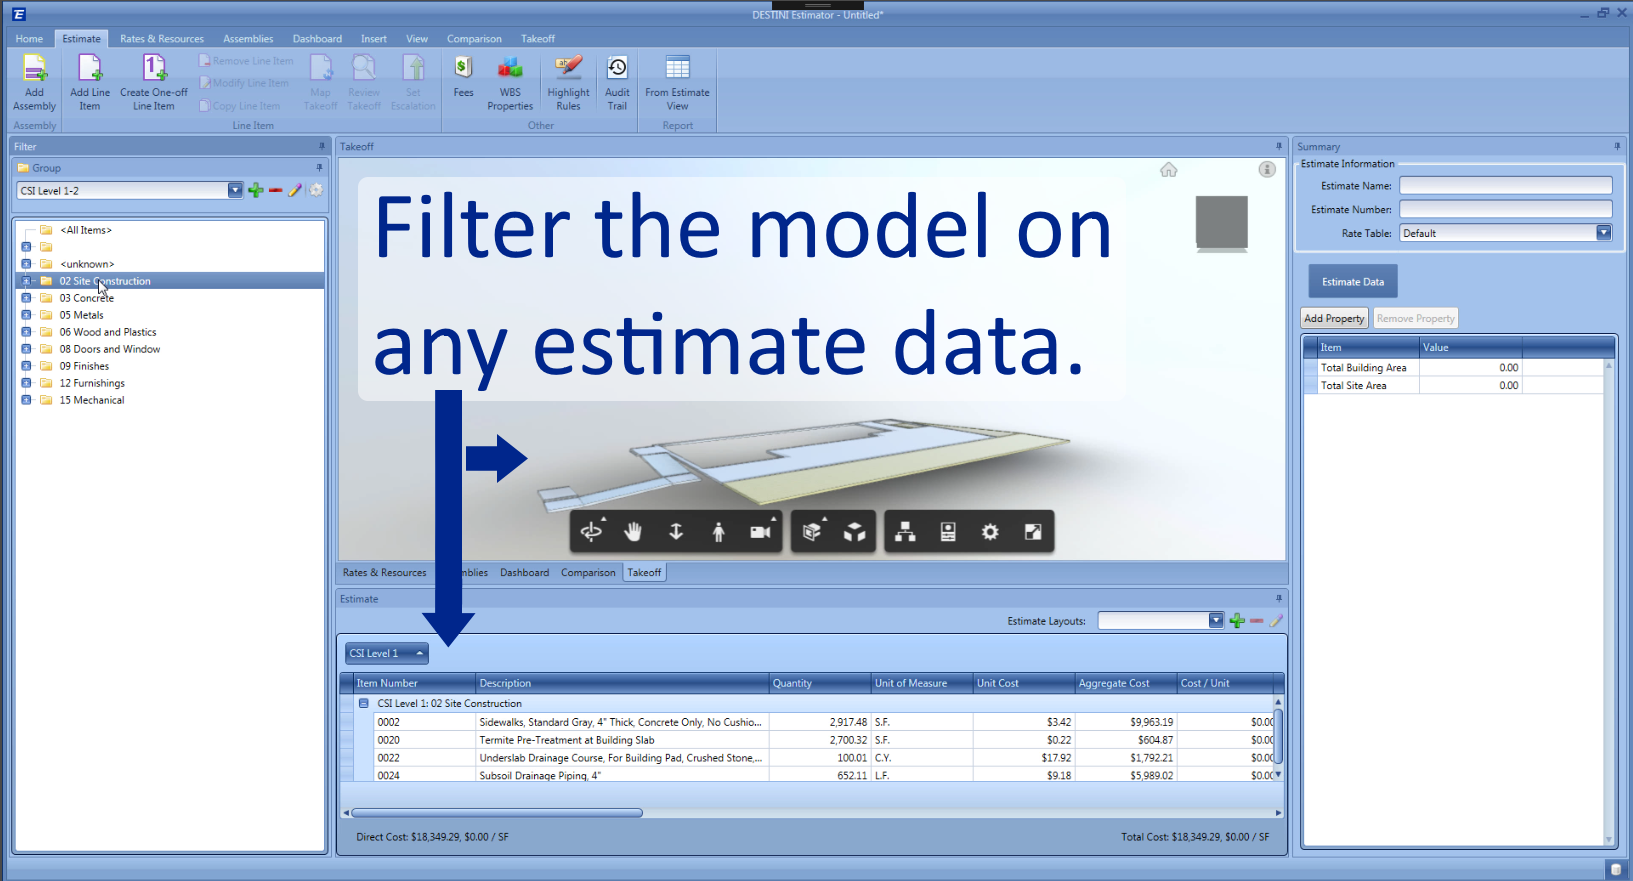 Filter model on estimate data